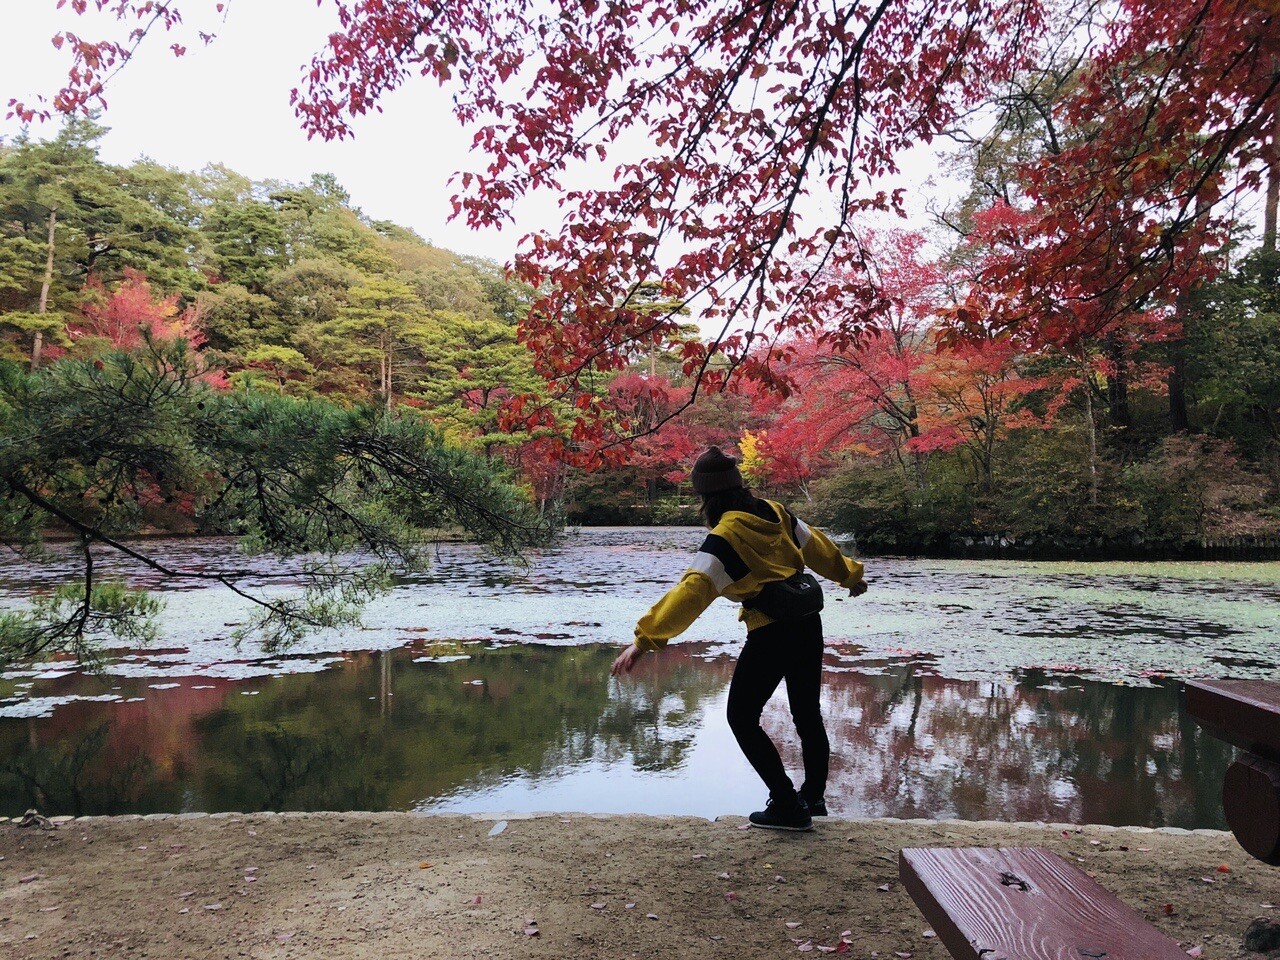 再び再度公園 神戸市立森林植物園 ライトアップ 六甲山 長峰山 摩耶山の写真30枚目 森林植物園の池 こうやってはしゃぐところ Yamap ヤマップ